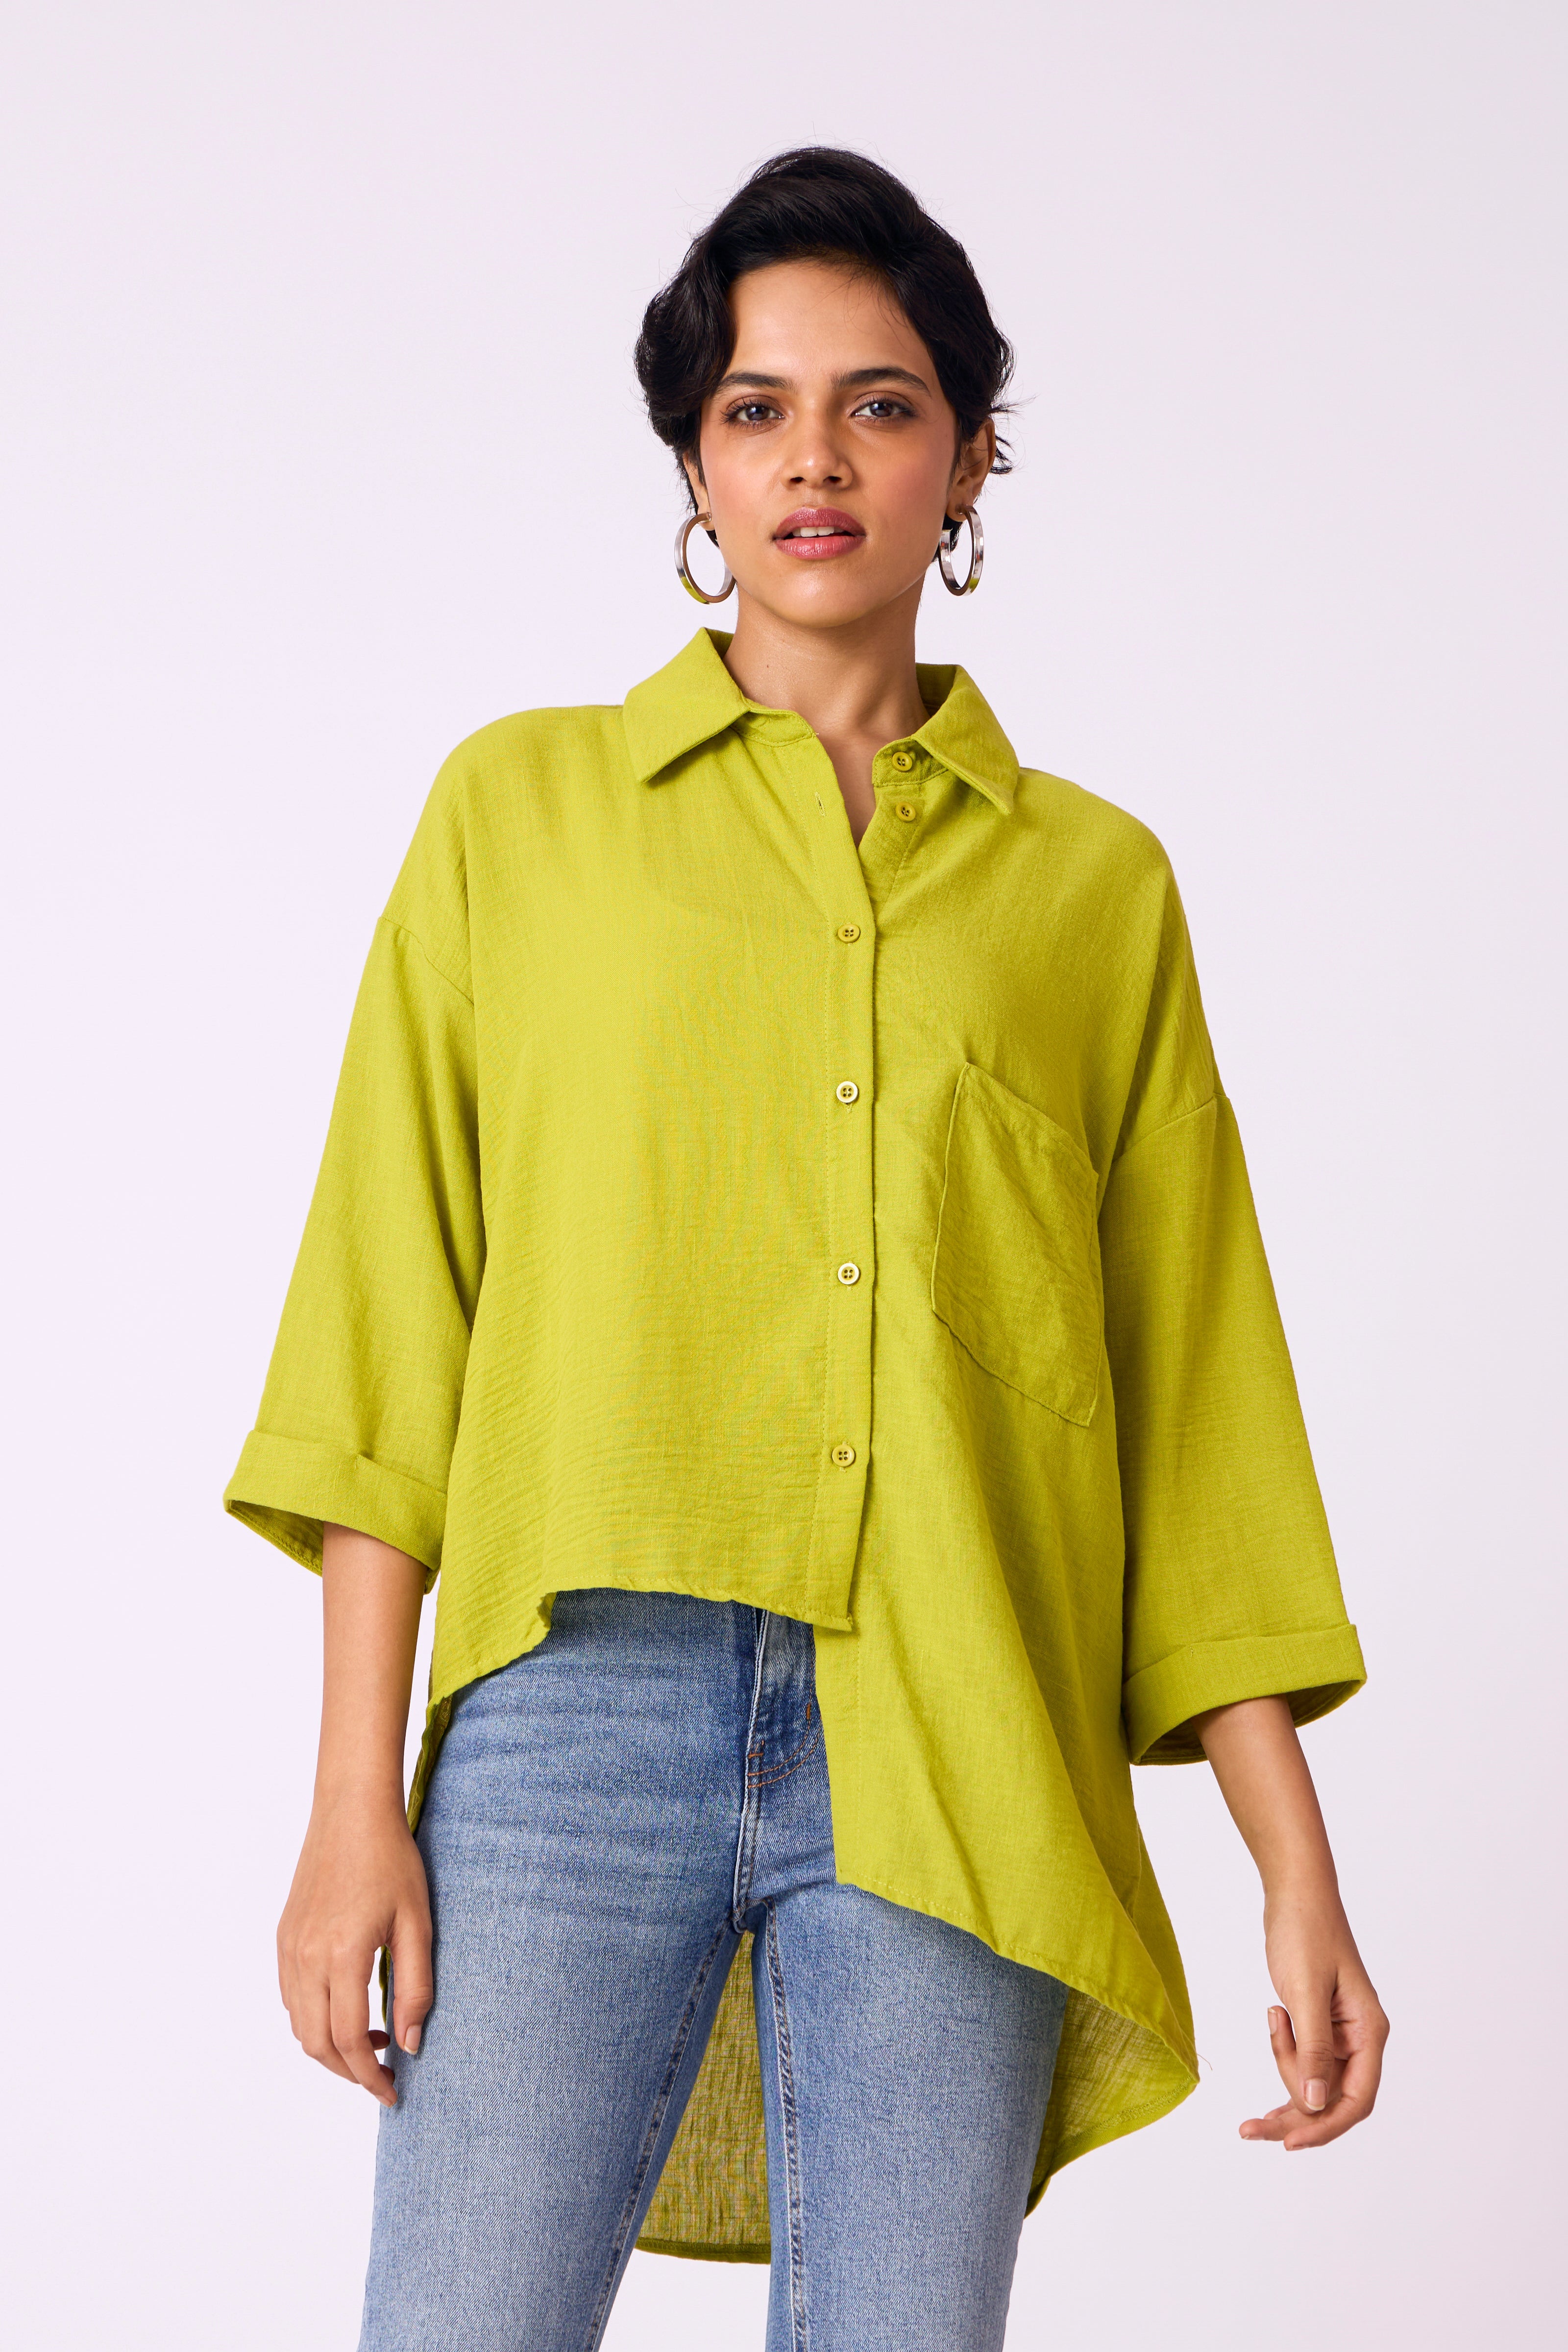 Lyra Shirt - Lime Green